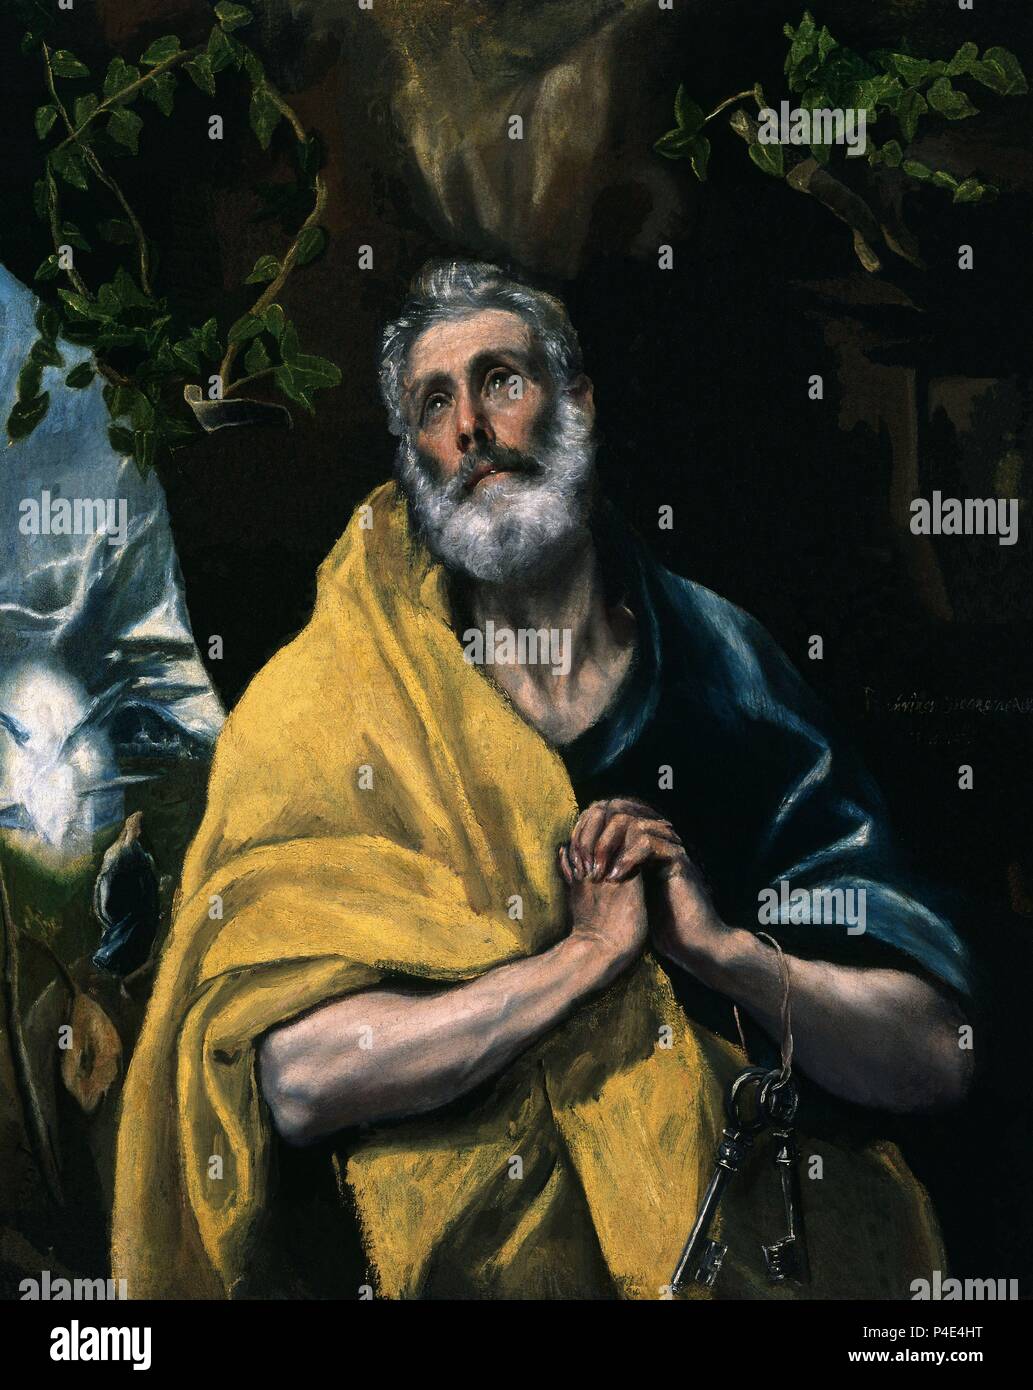 LAS LAGRIMAS DE SAN PEDRO. Author: El Greco (1541-1614). Location: CASA MUSEO DEL GRECO-COLECCION, TOLEDO, SPAIN. Stock Photo